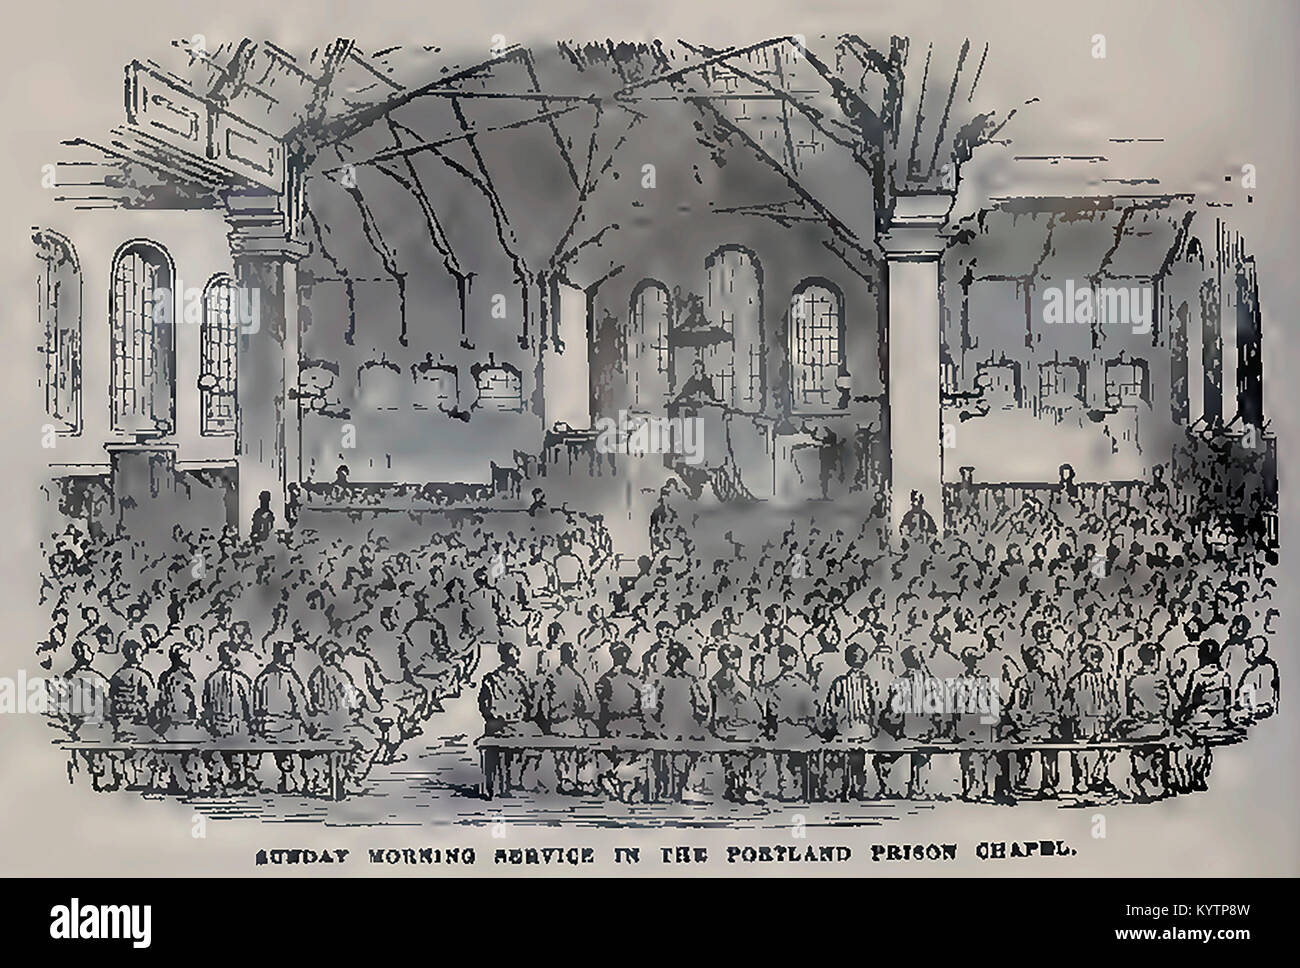 La prison de Portland , UK - milieu du xixe siècle - un croquis des prisonniers à dimanche dans l'église Banque D'Images